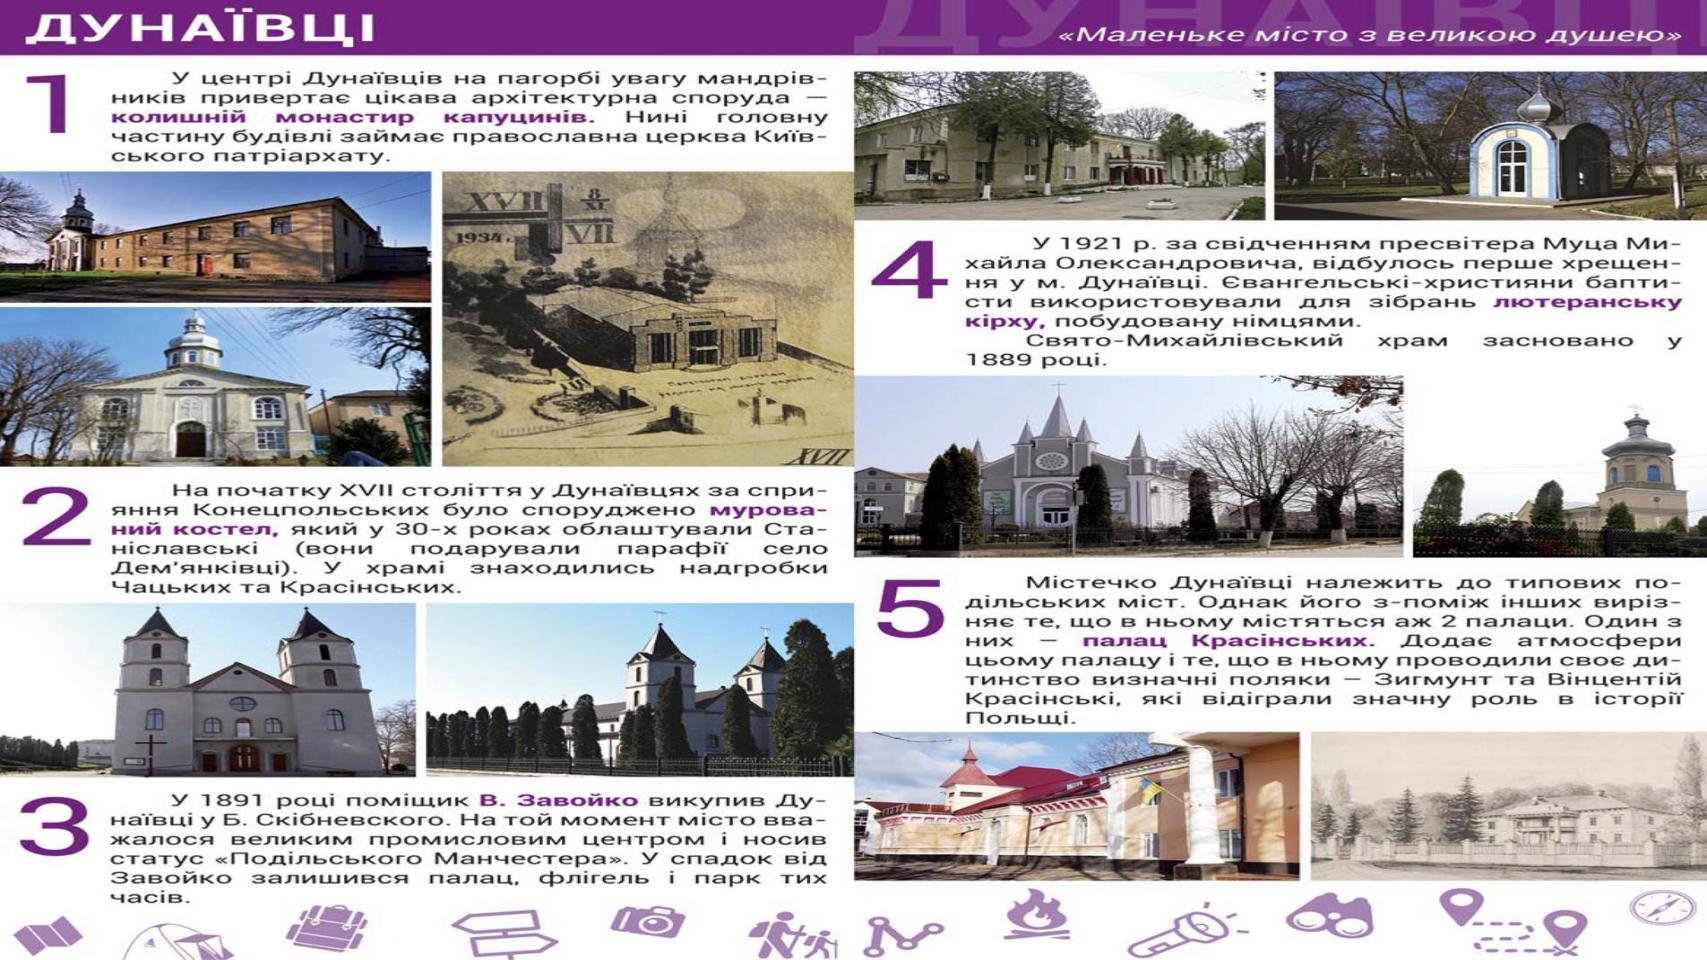 http://dunrada.gov.ua/uploadfile/archive_article/2020/01/31/2020-01-31_678/images/images-74226.jpg